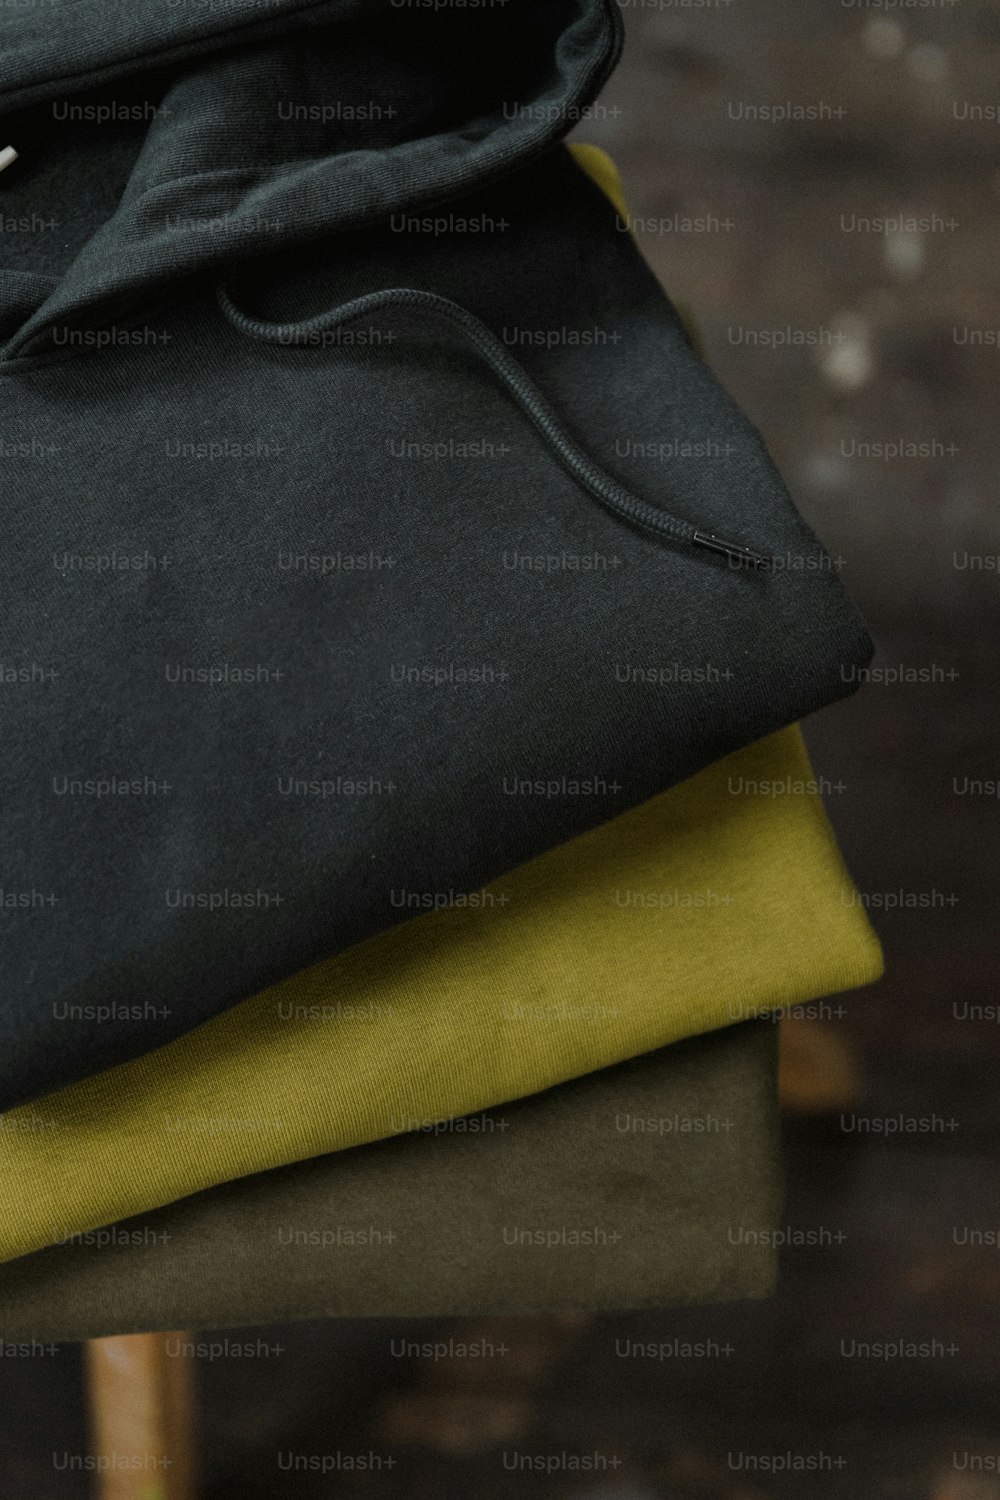 Una pila de telas negras y amarillas sentadas una encima de la otra